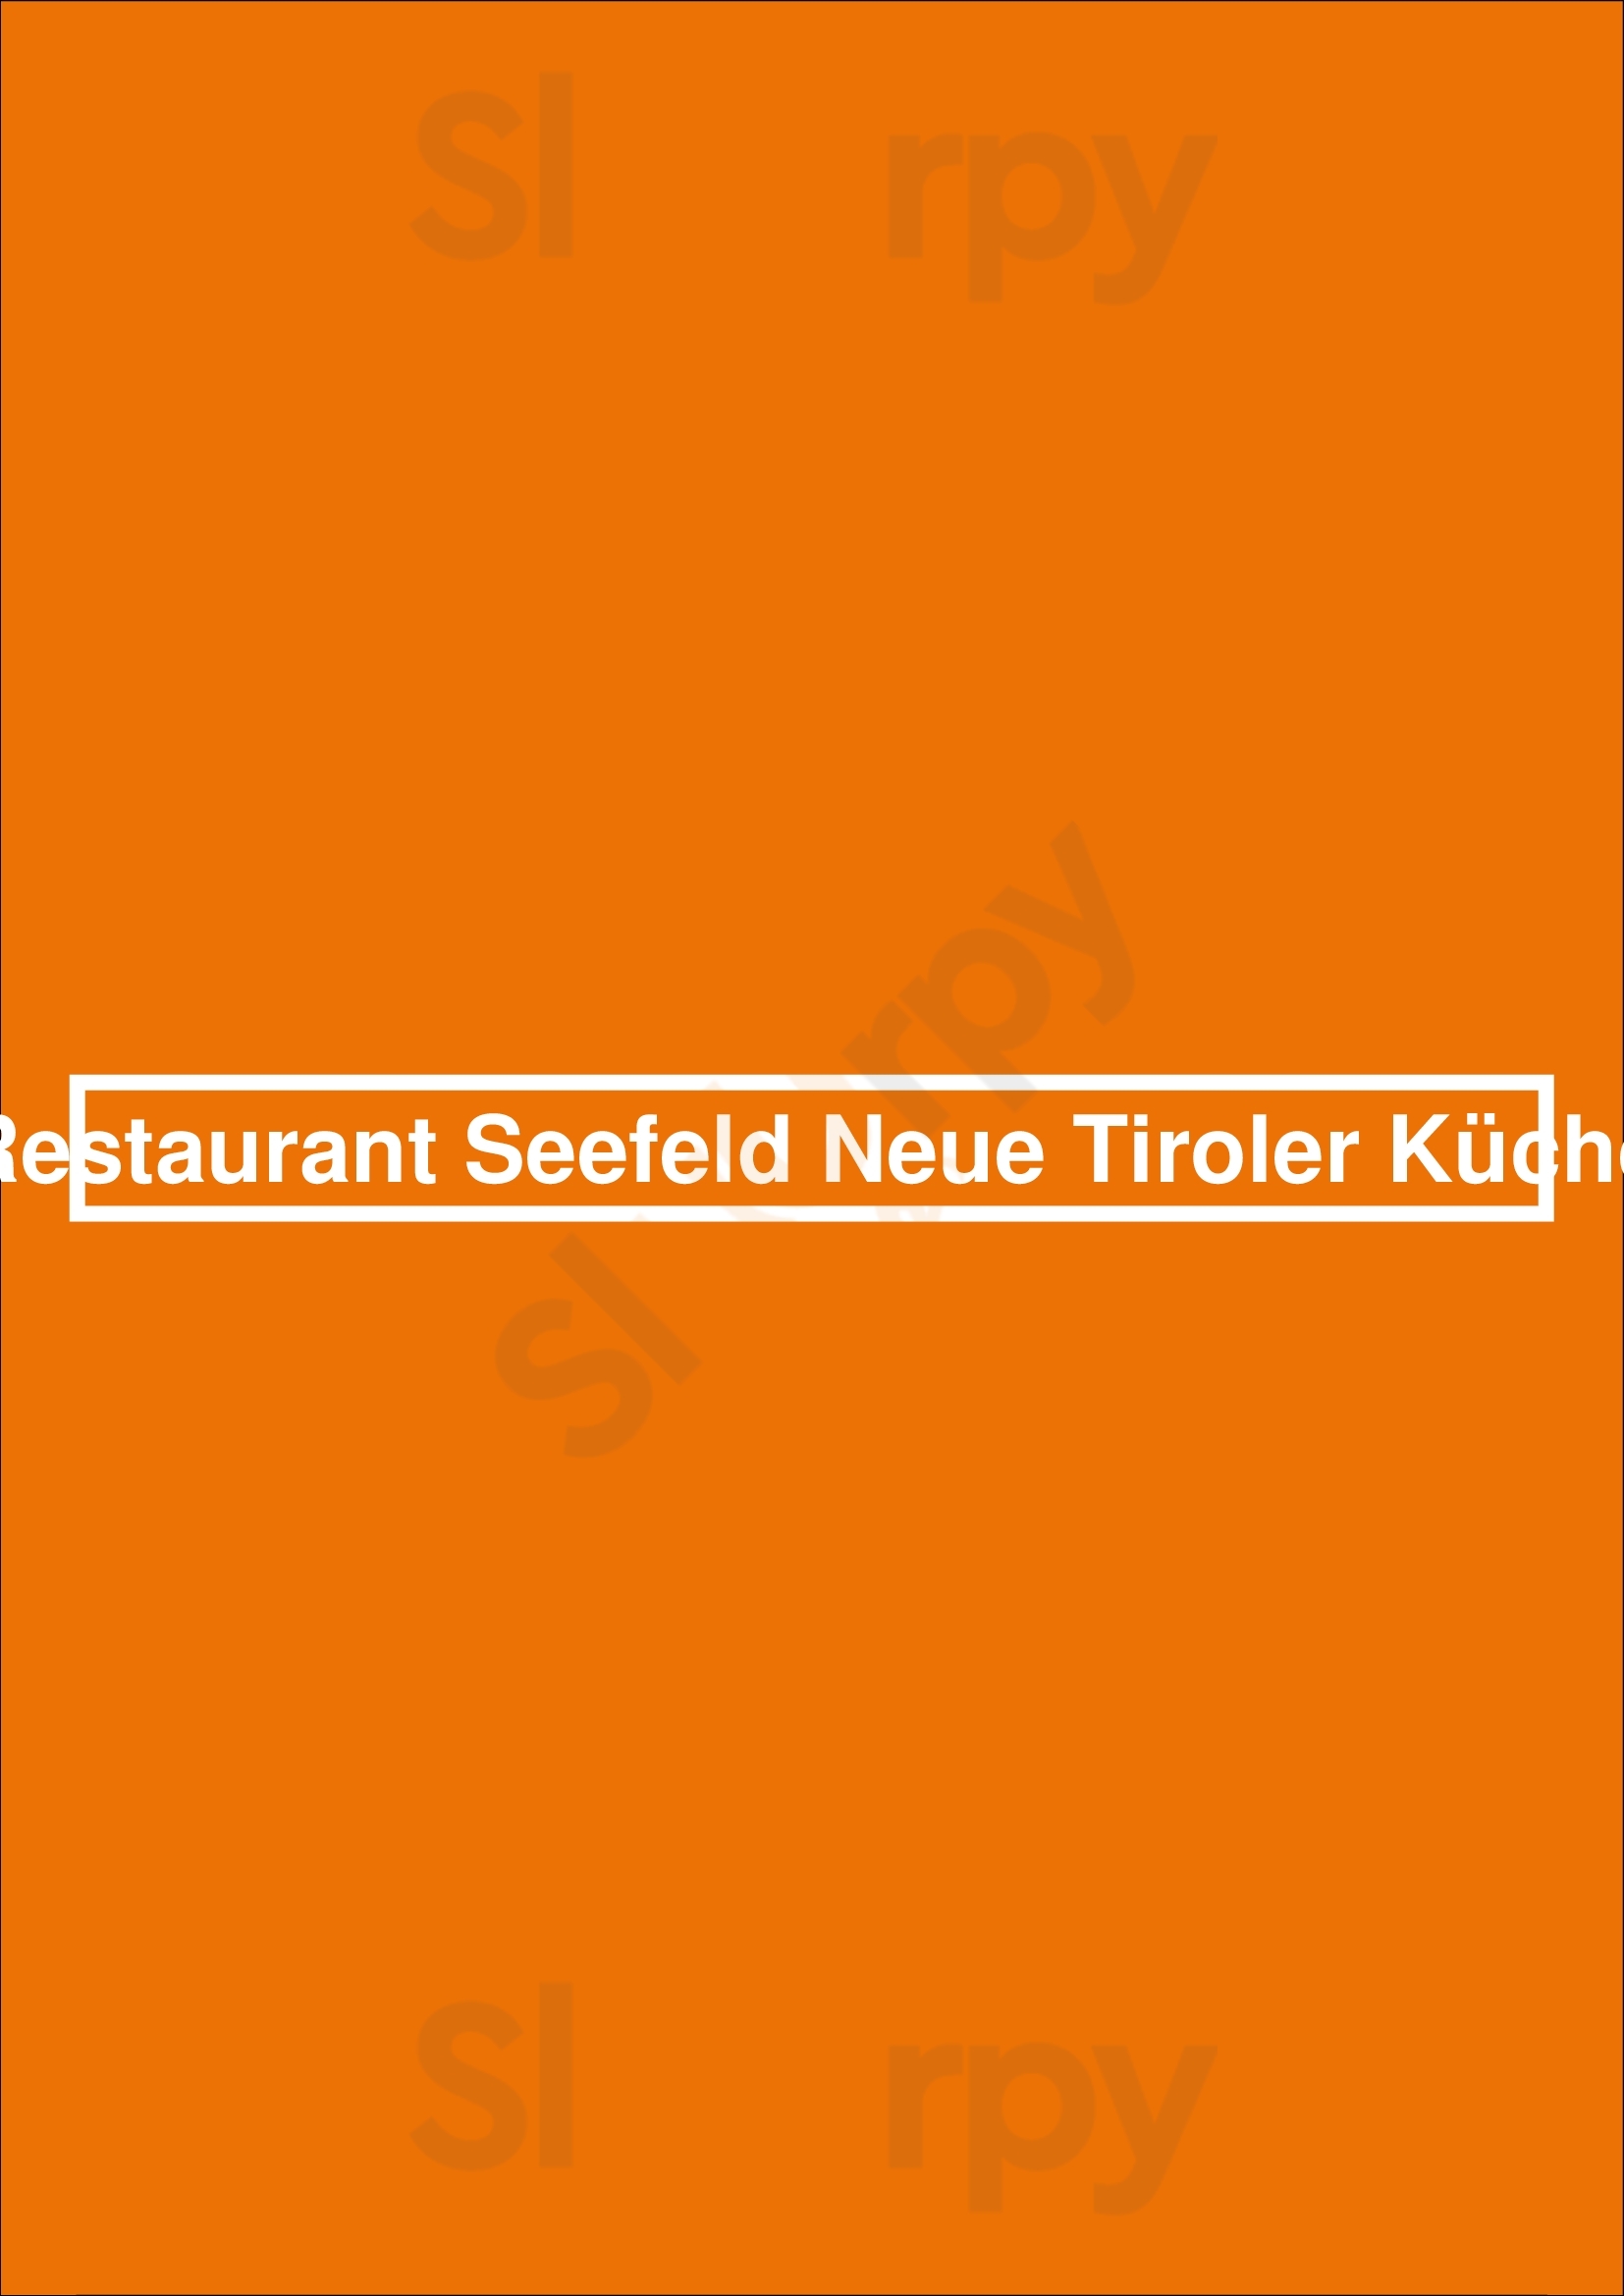 Seefeld – Neue Tiroler Küche Frankfurt am Main Menu - 1